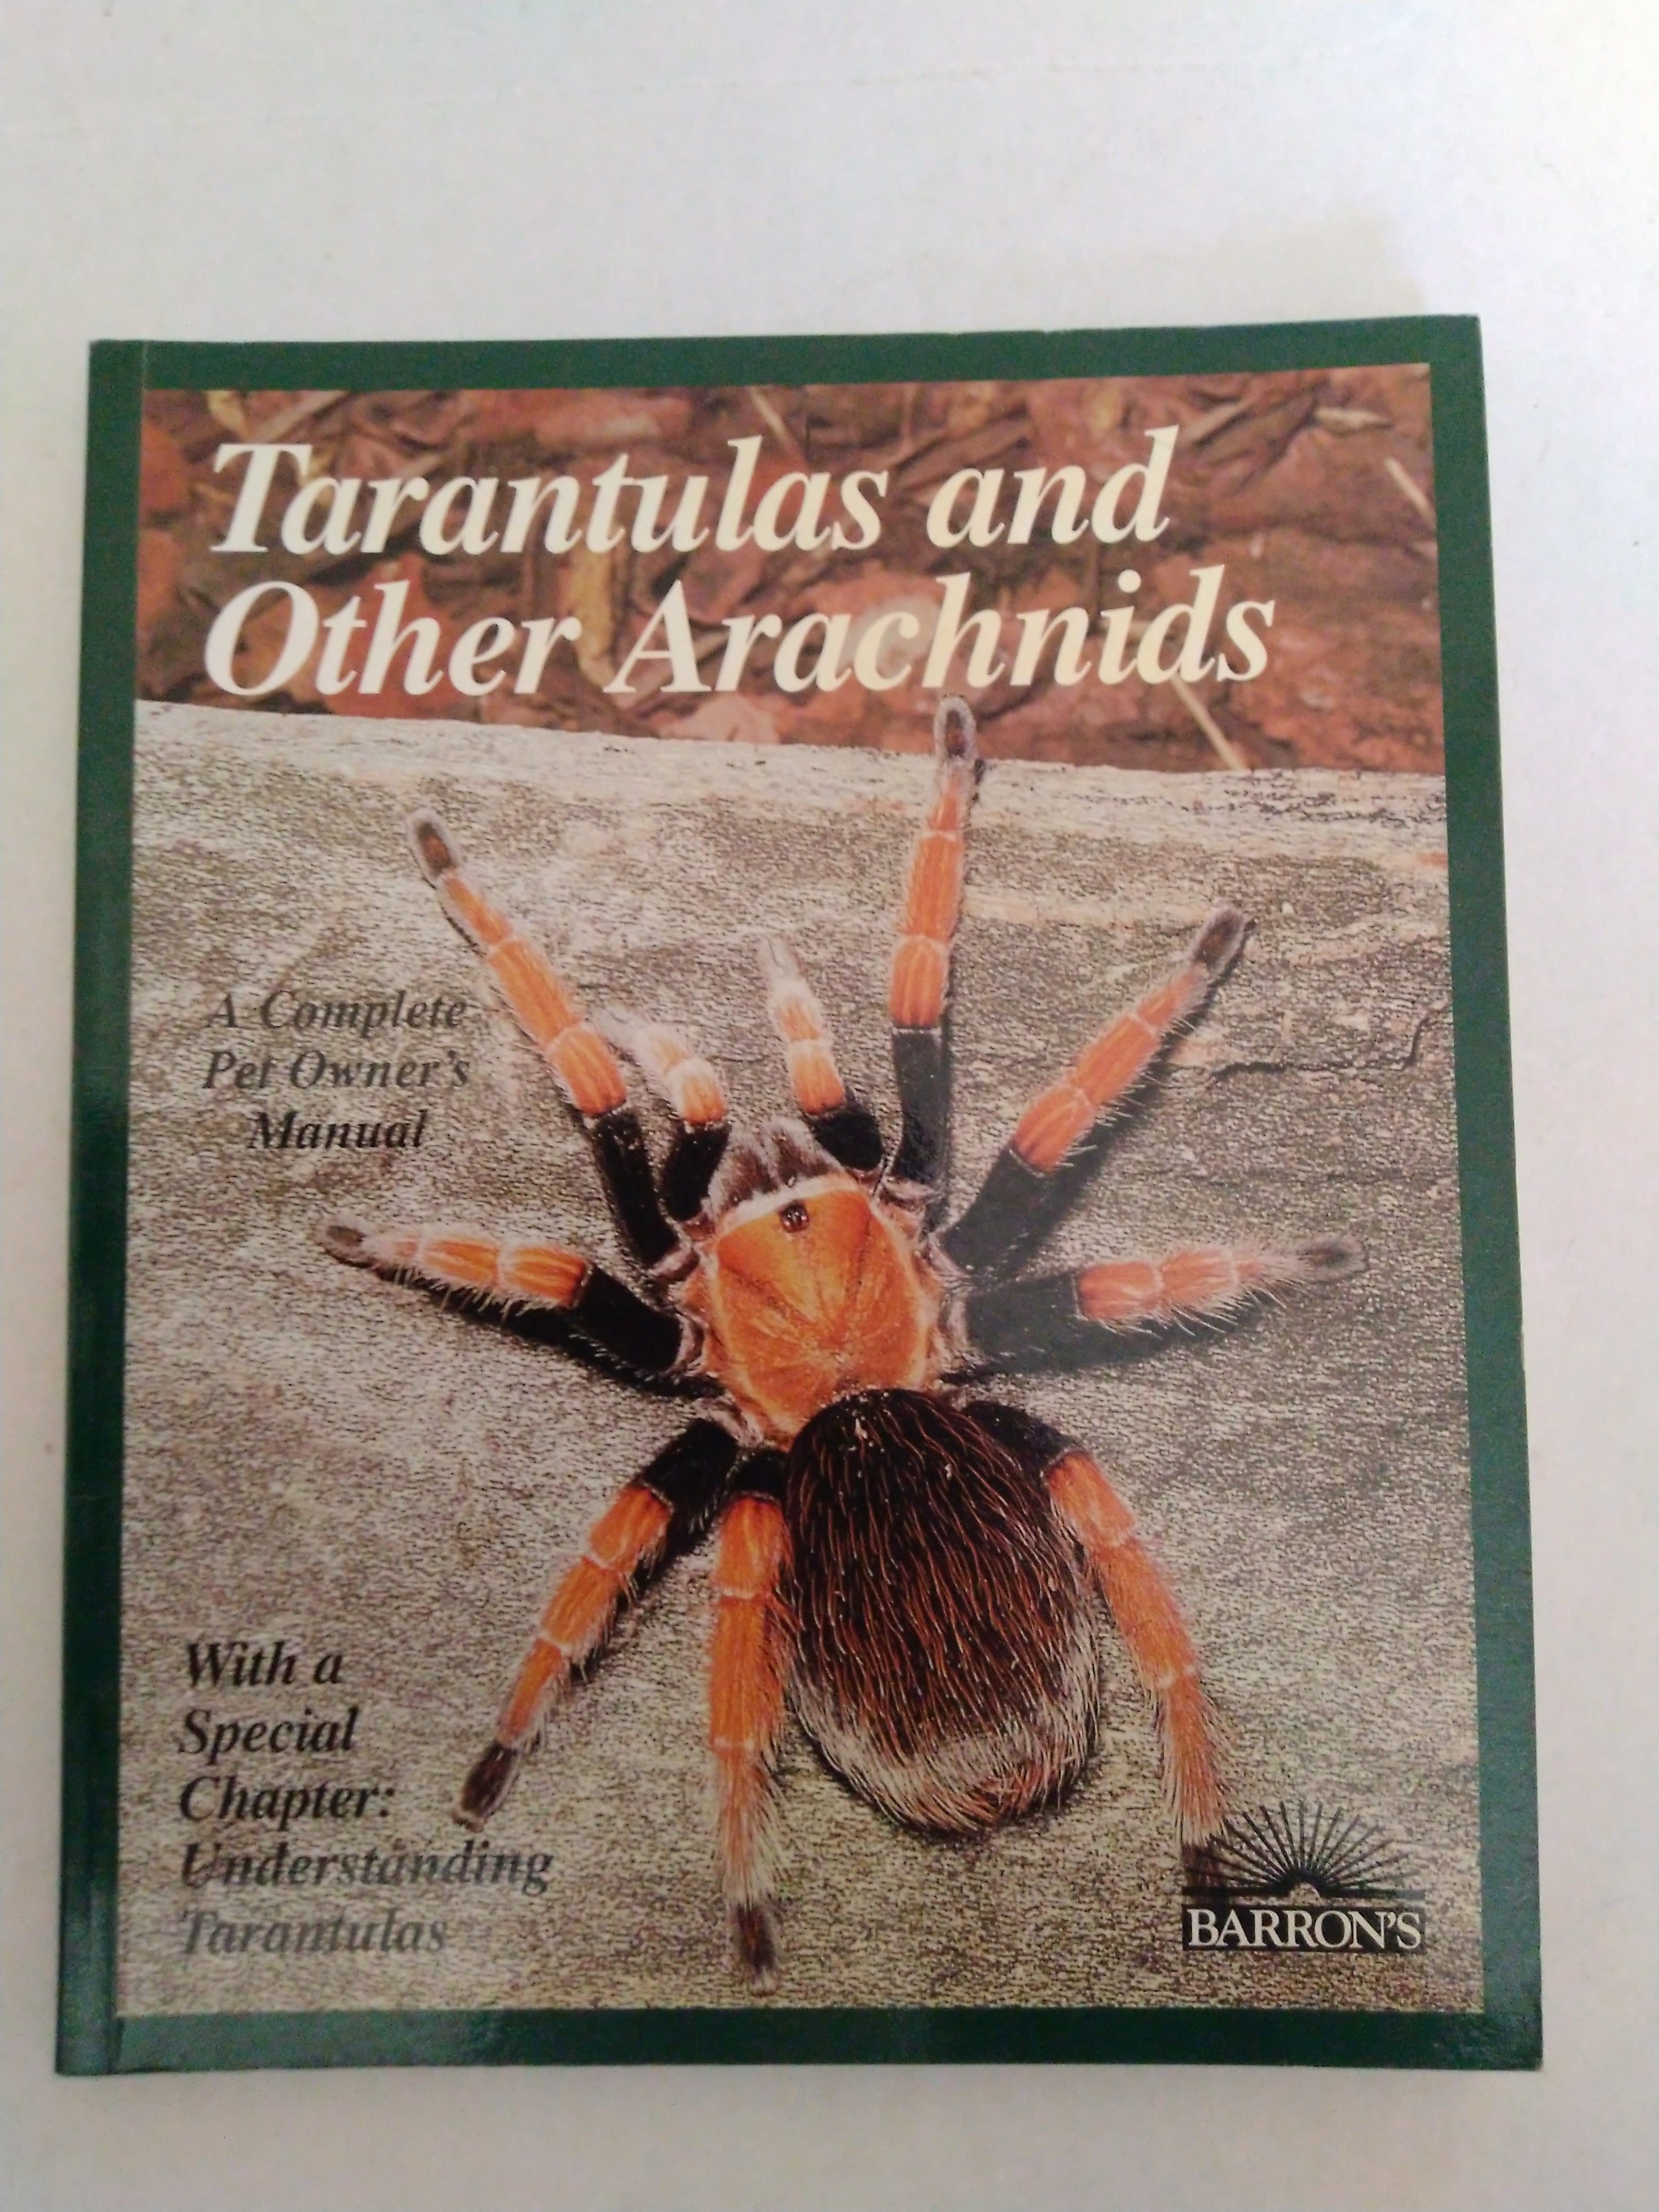 Tarantulas and Other Arachnids. by Samuel D. Marshall